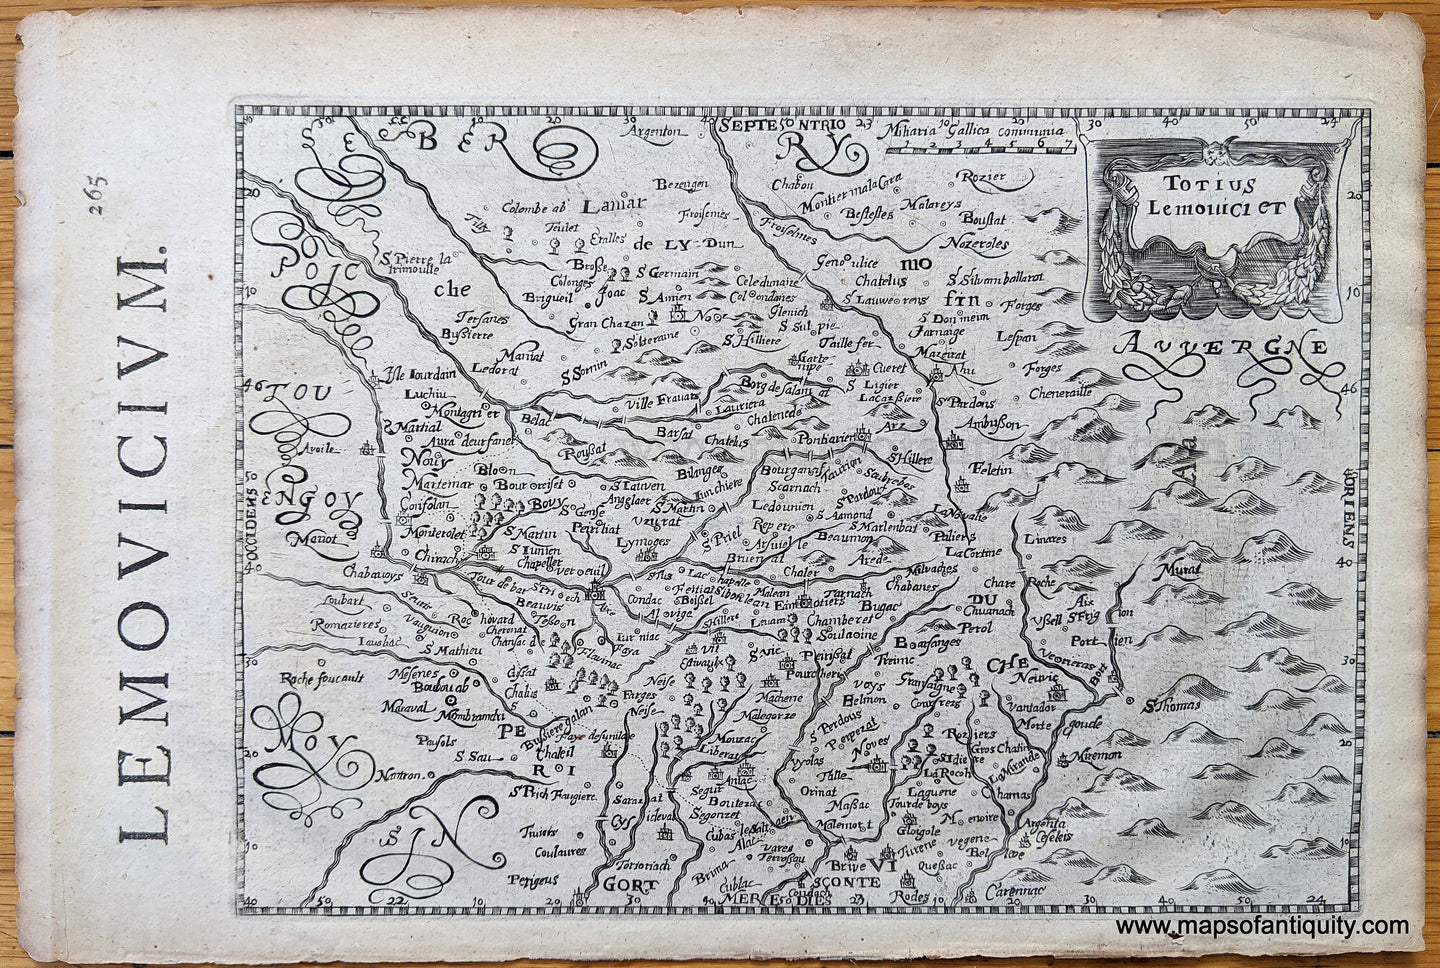 Genuine-Antique-map-Totius-Lemouici-et---part-of-France-Europe-France-1630-Mercator-Hondius-Maps-Of-Antiquity-1800s-19th-century